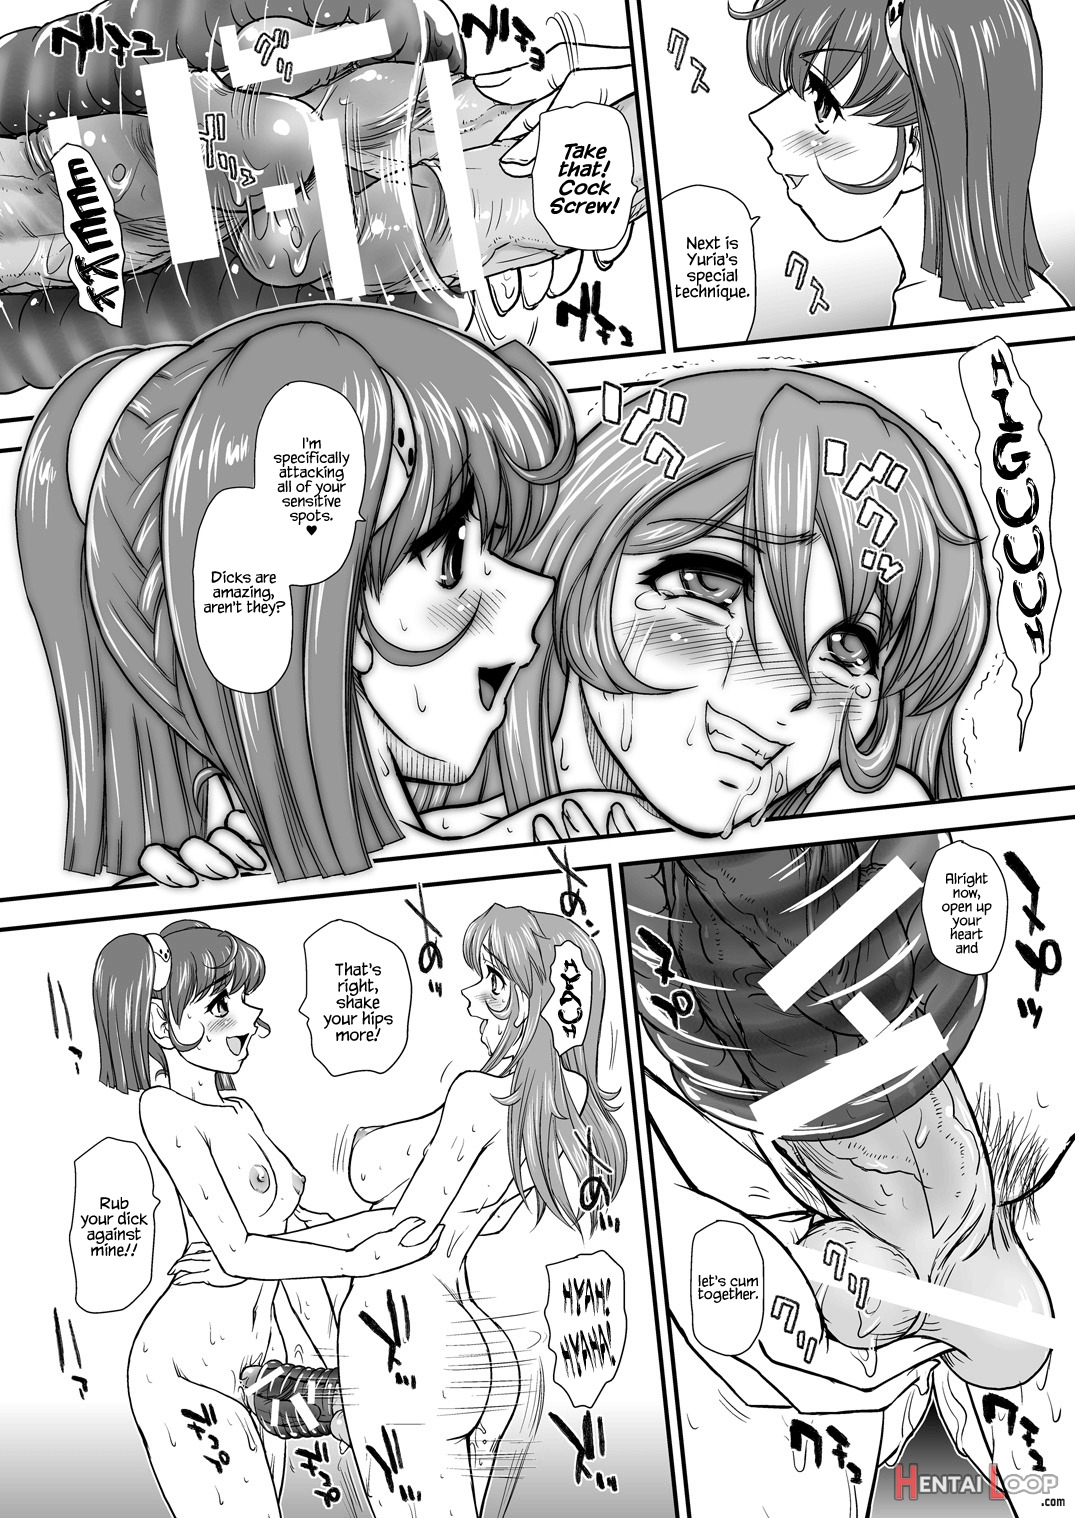 Yamato 2199 Alternative page 22